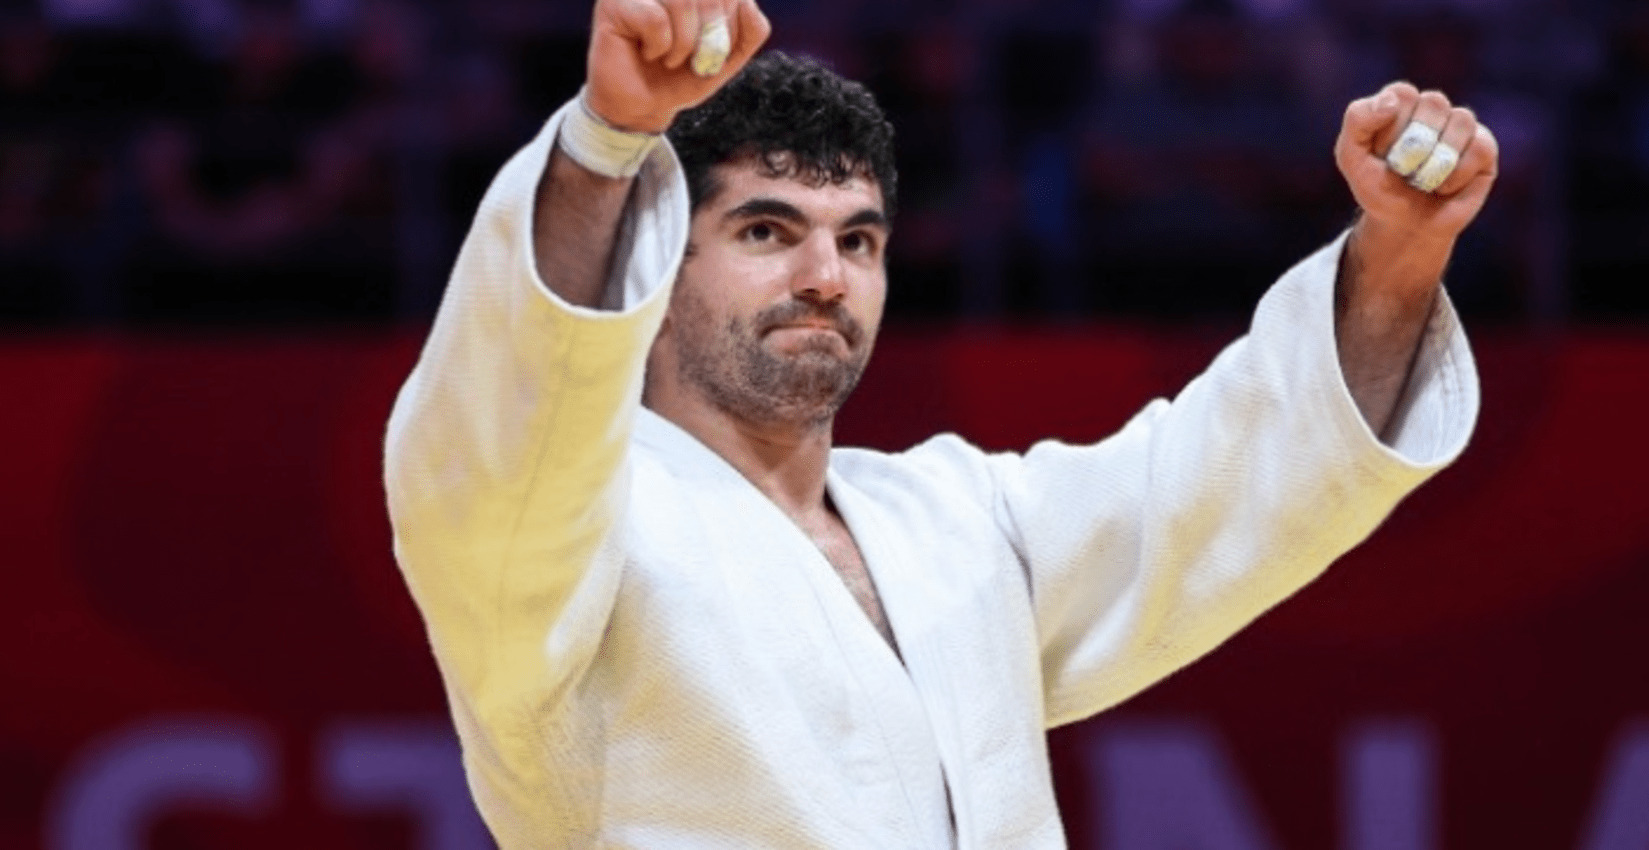 Ο Θεόδωρος Τσελίδης κατέκτησε το χρυσό μετάλλιο στο Γκραν Σλαμ τζούντο της Τασκένδης